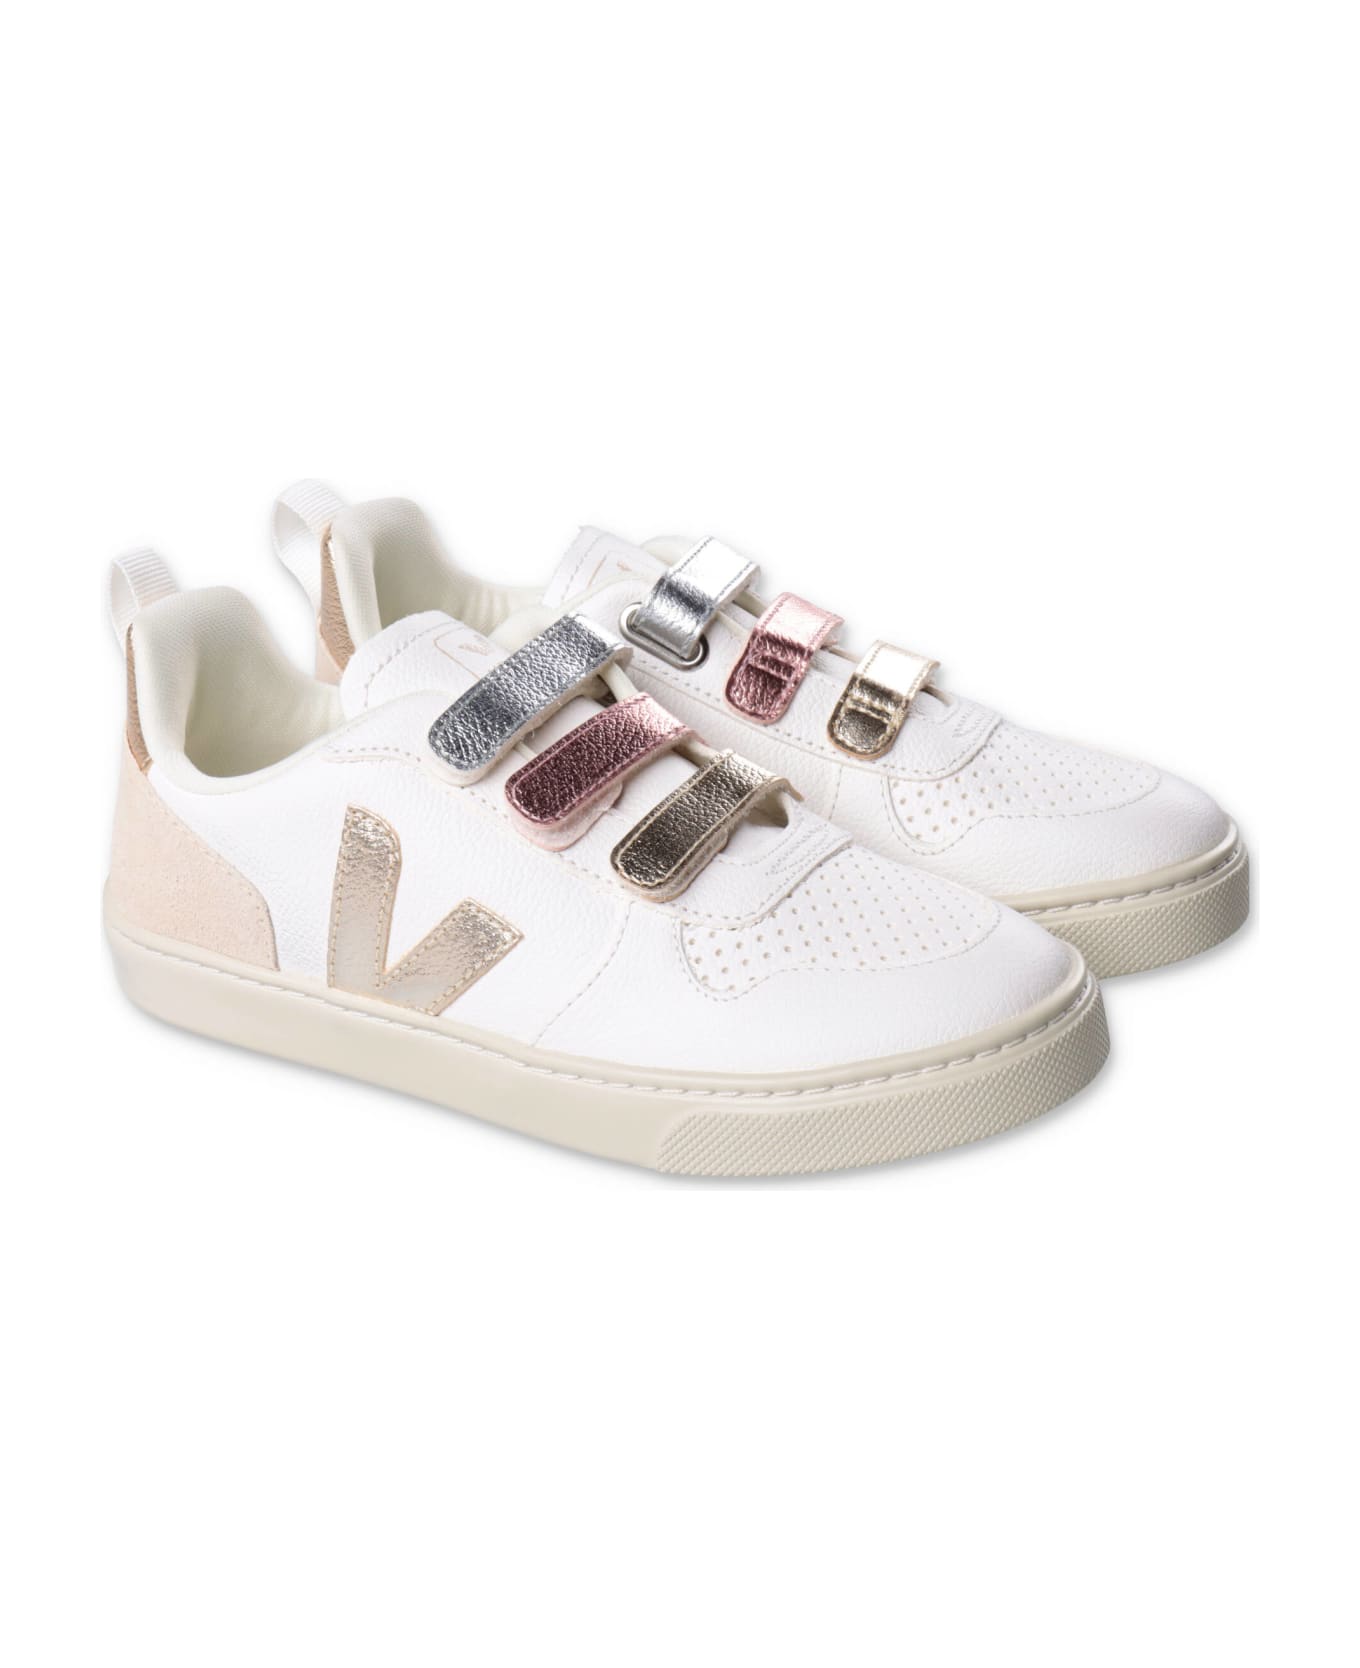 Veja Sneakers Bianche In Pelle Con Velcro Bambina - Bianco シューズ